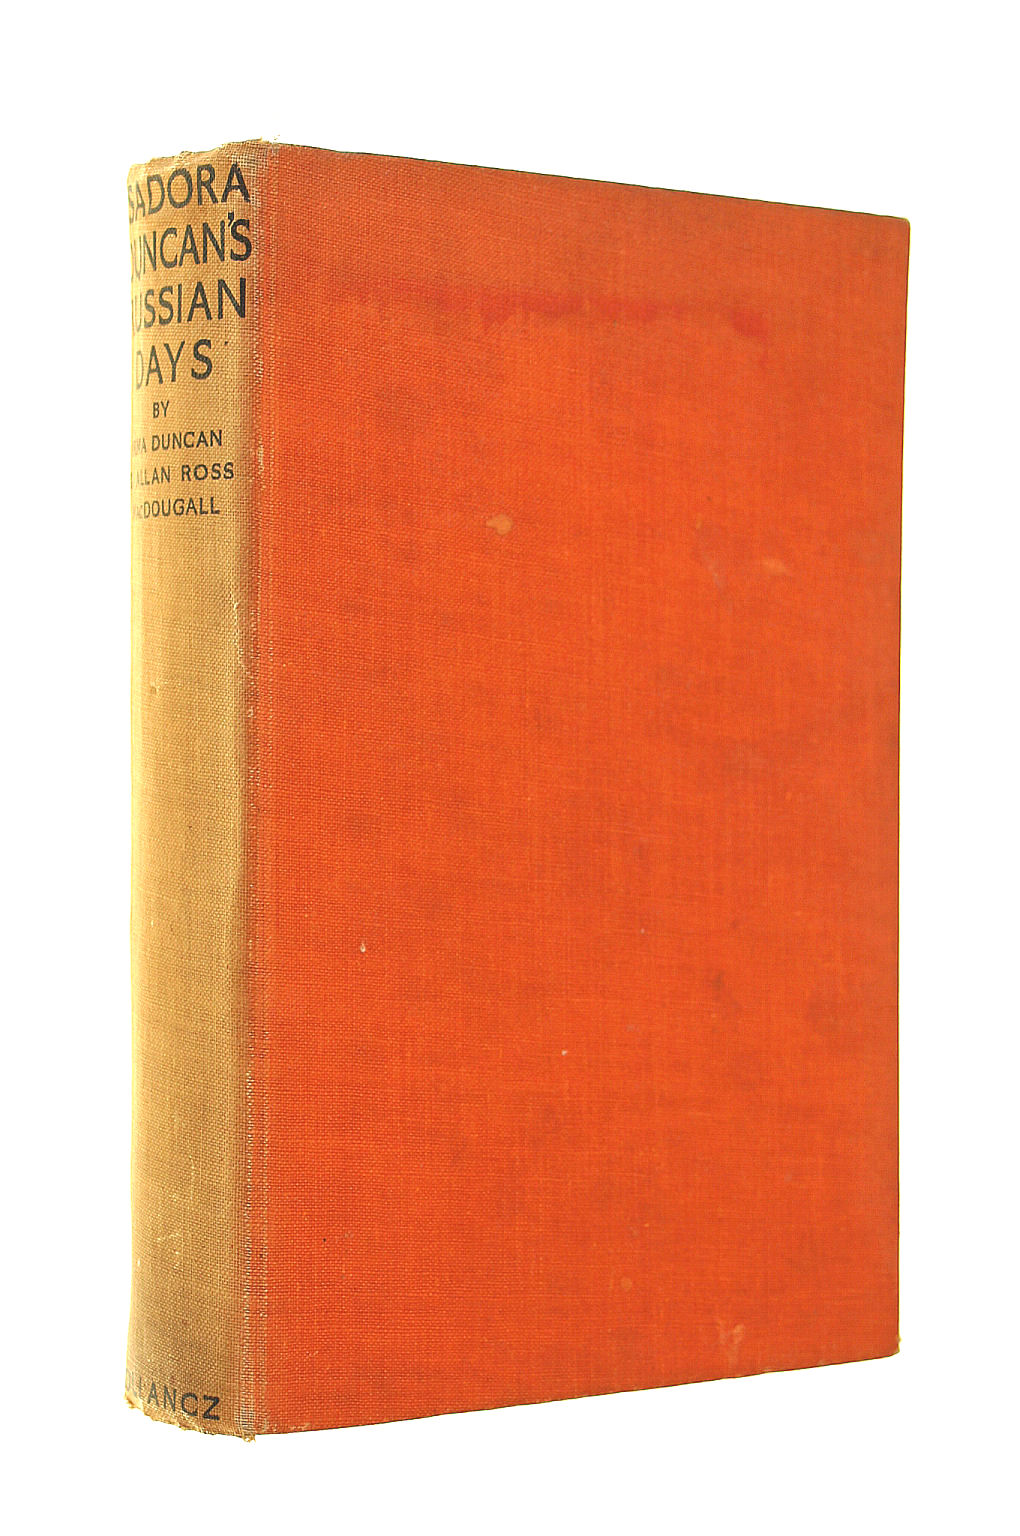 DUNCAN, IRMA & MACDOUGAL, ALLAN ROSS - Isadora Duncan's Russian Days